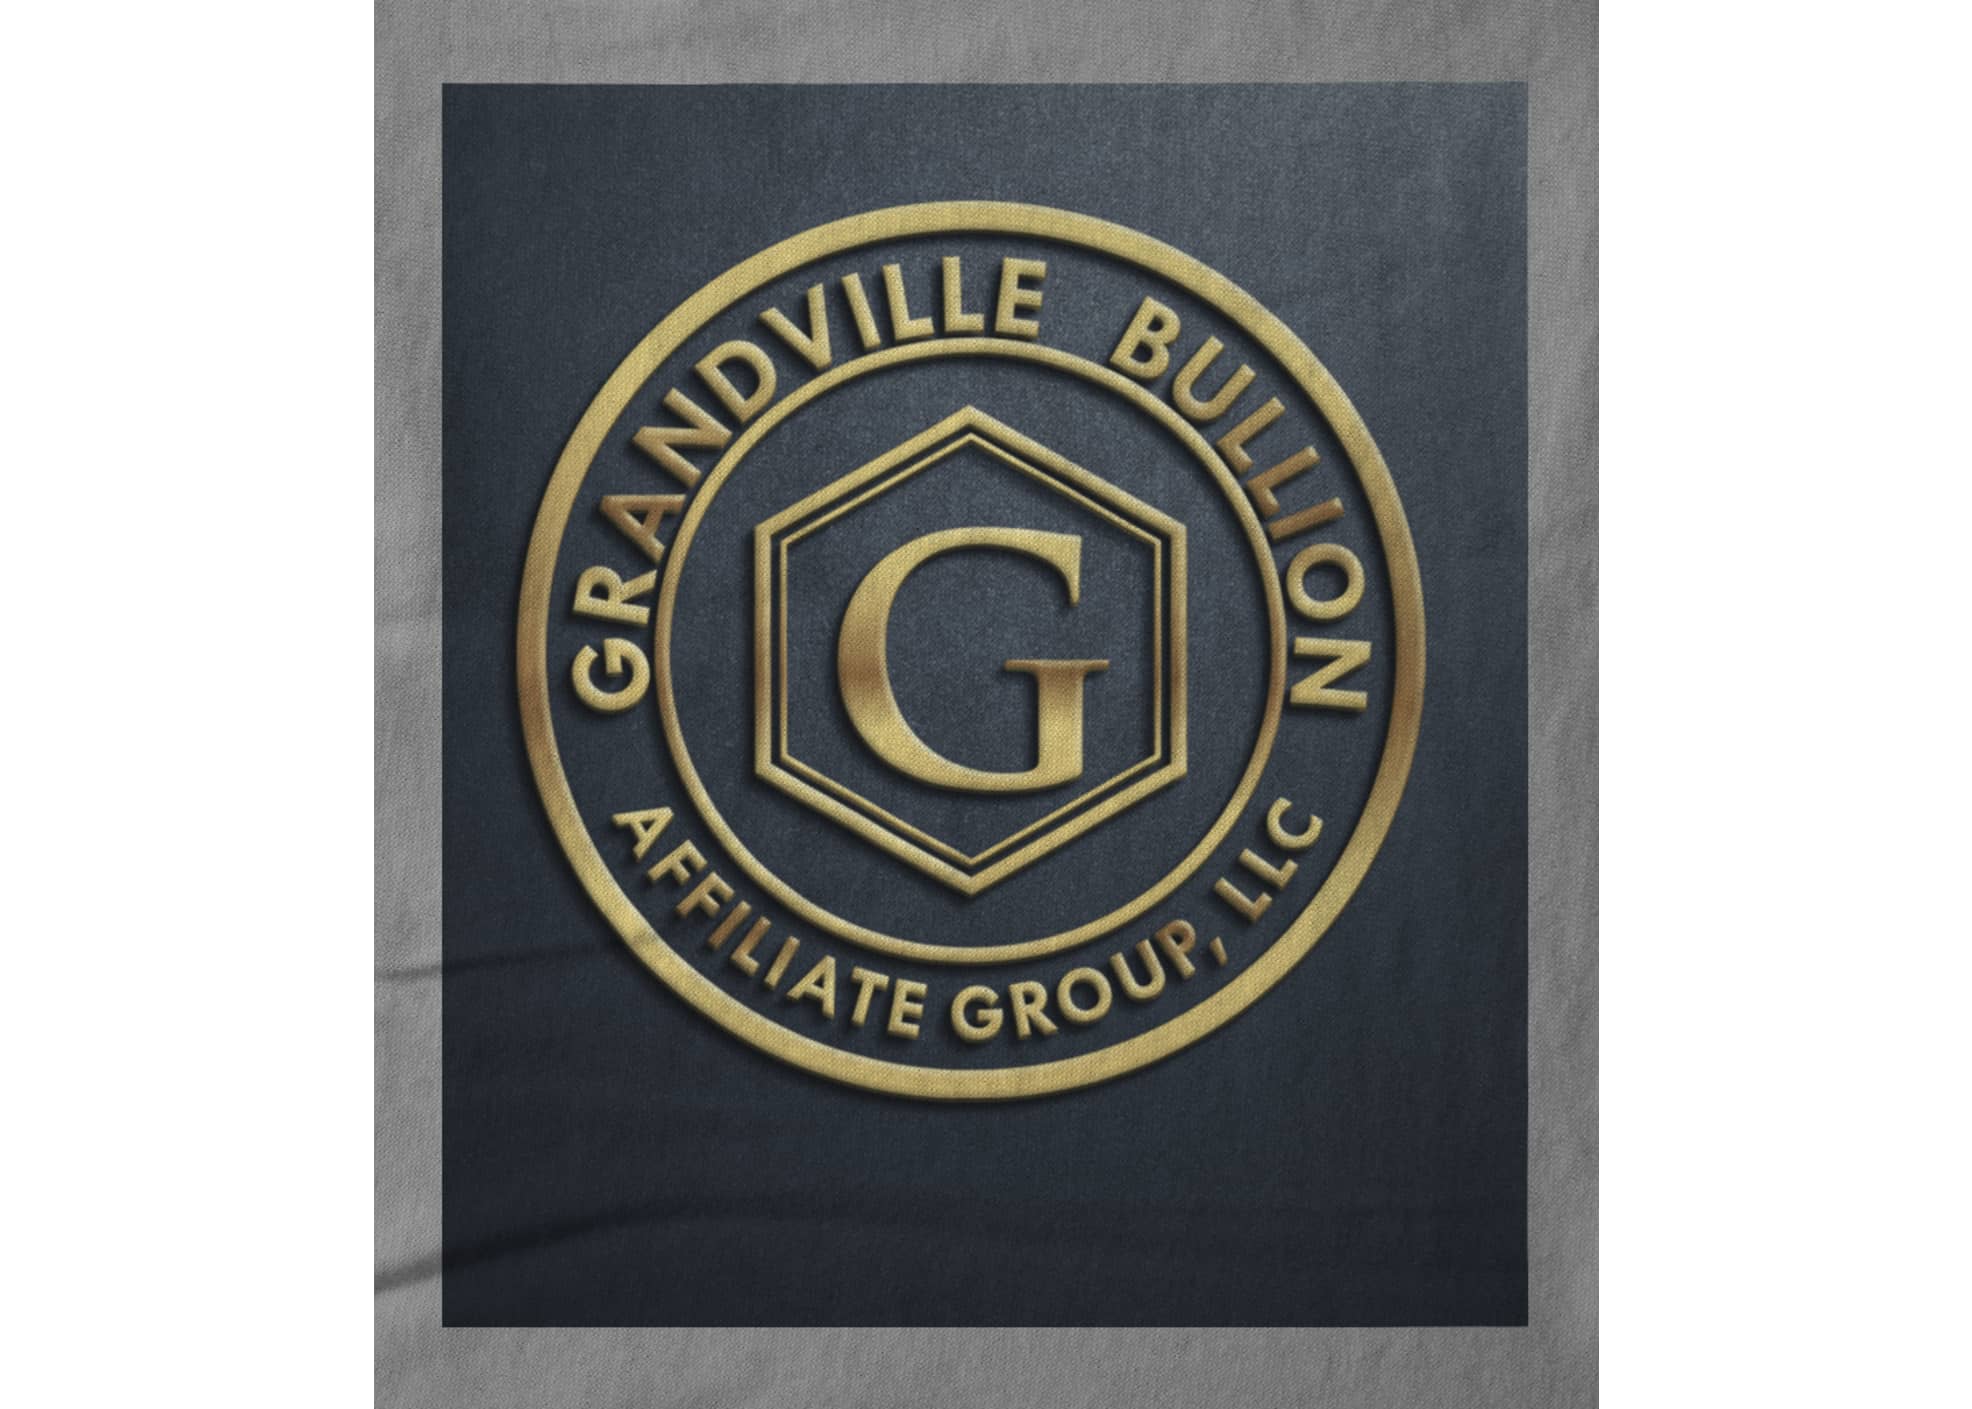 Grandville bullion group llc gray and gold  1629991104